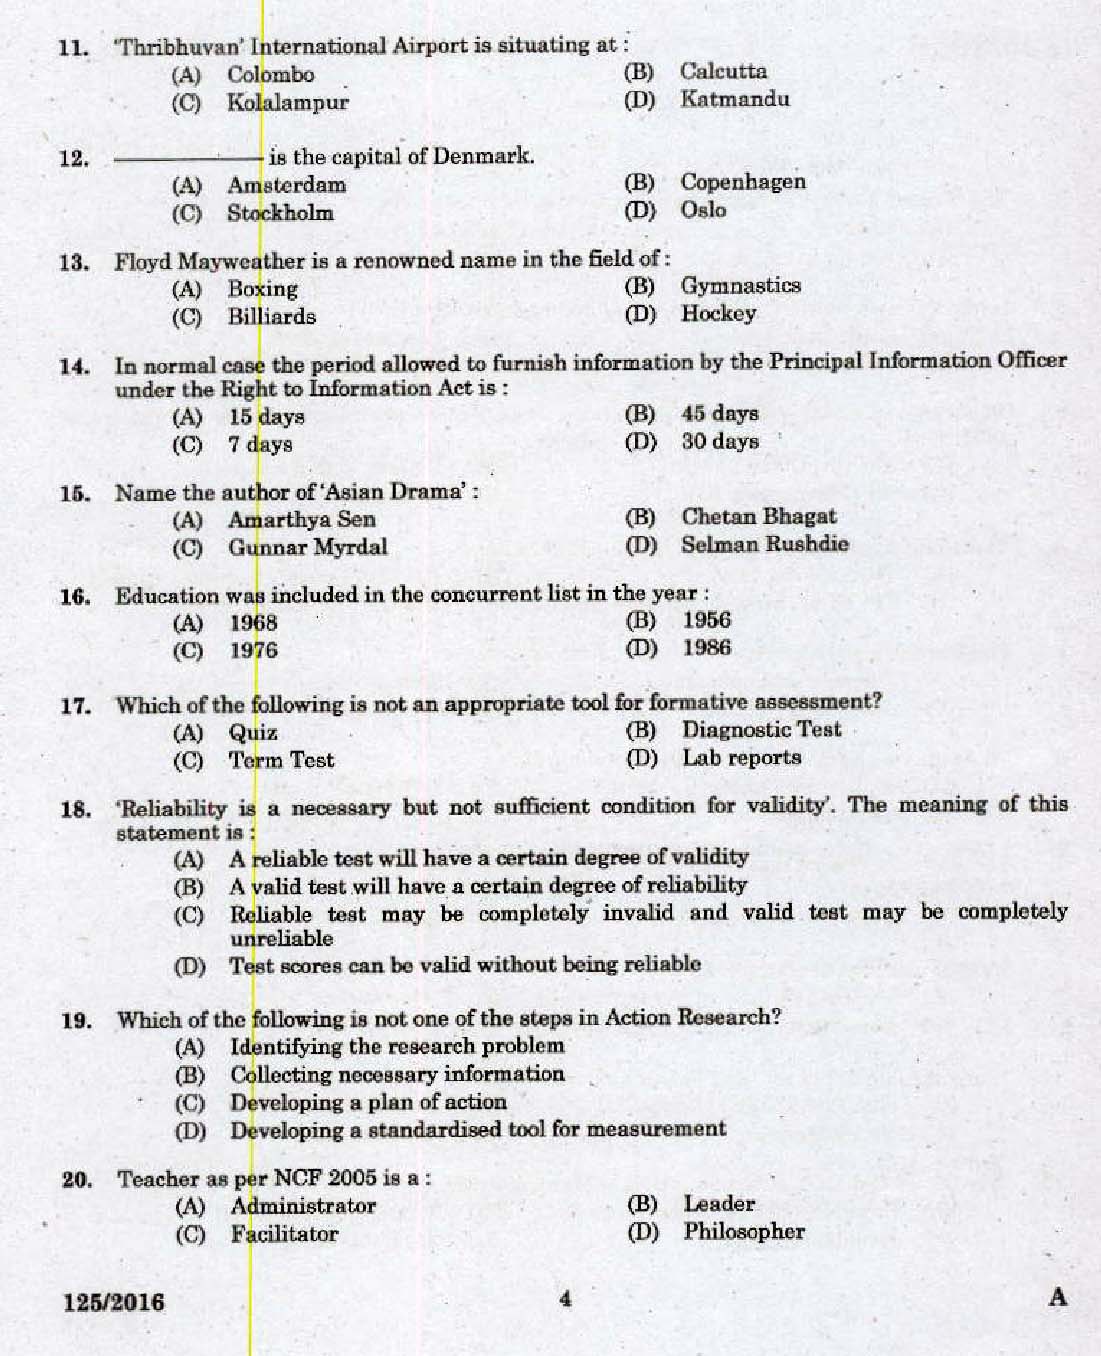 Kerala PSC High School Assistant Social Studies Question Paper Code 1252016 2